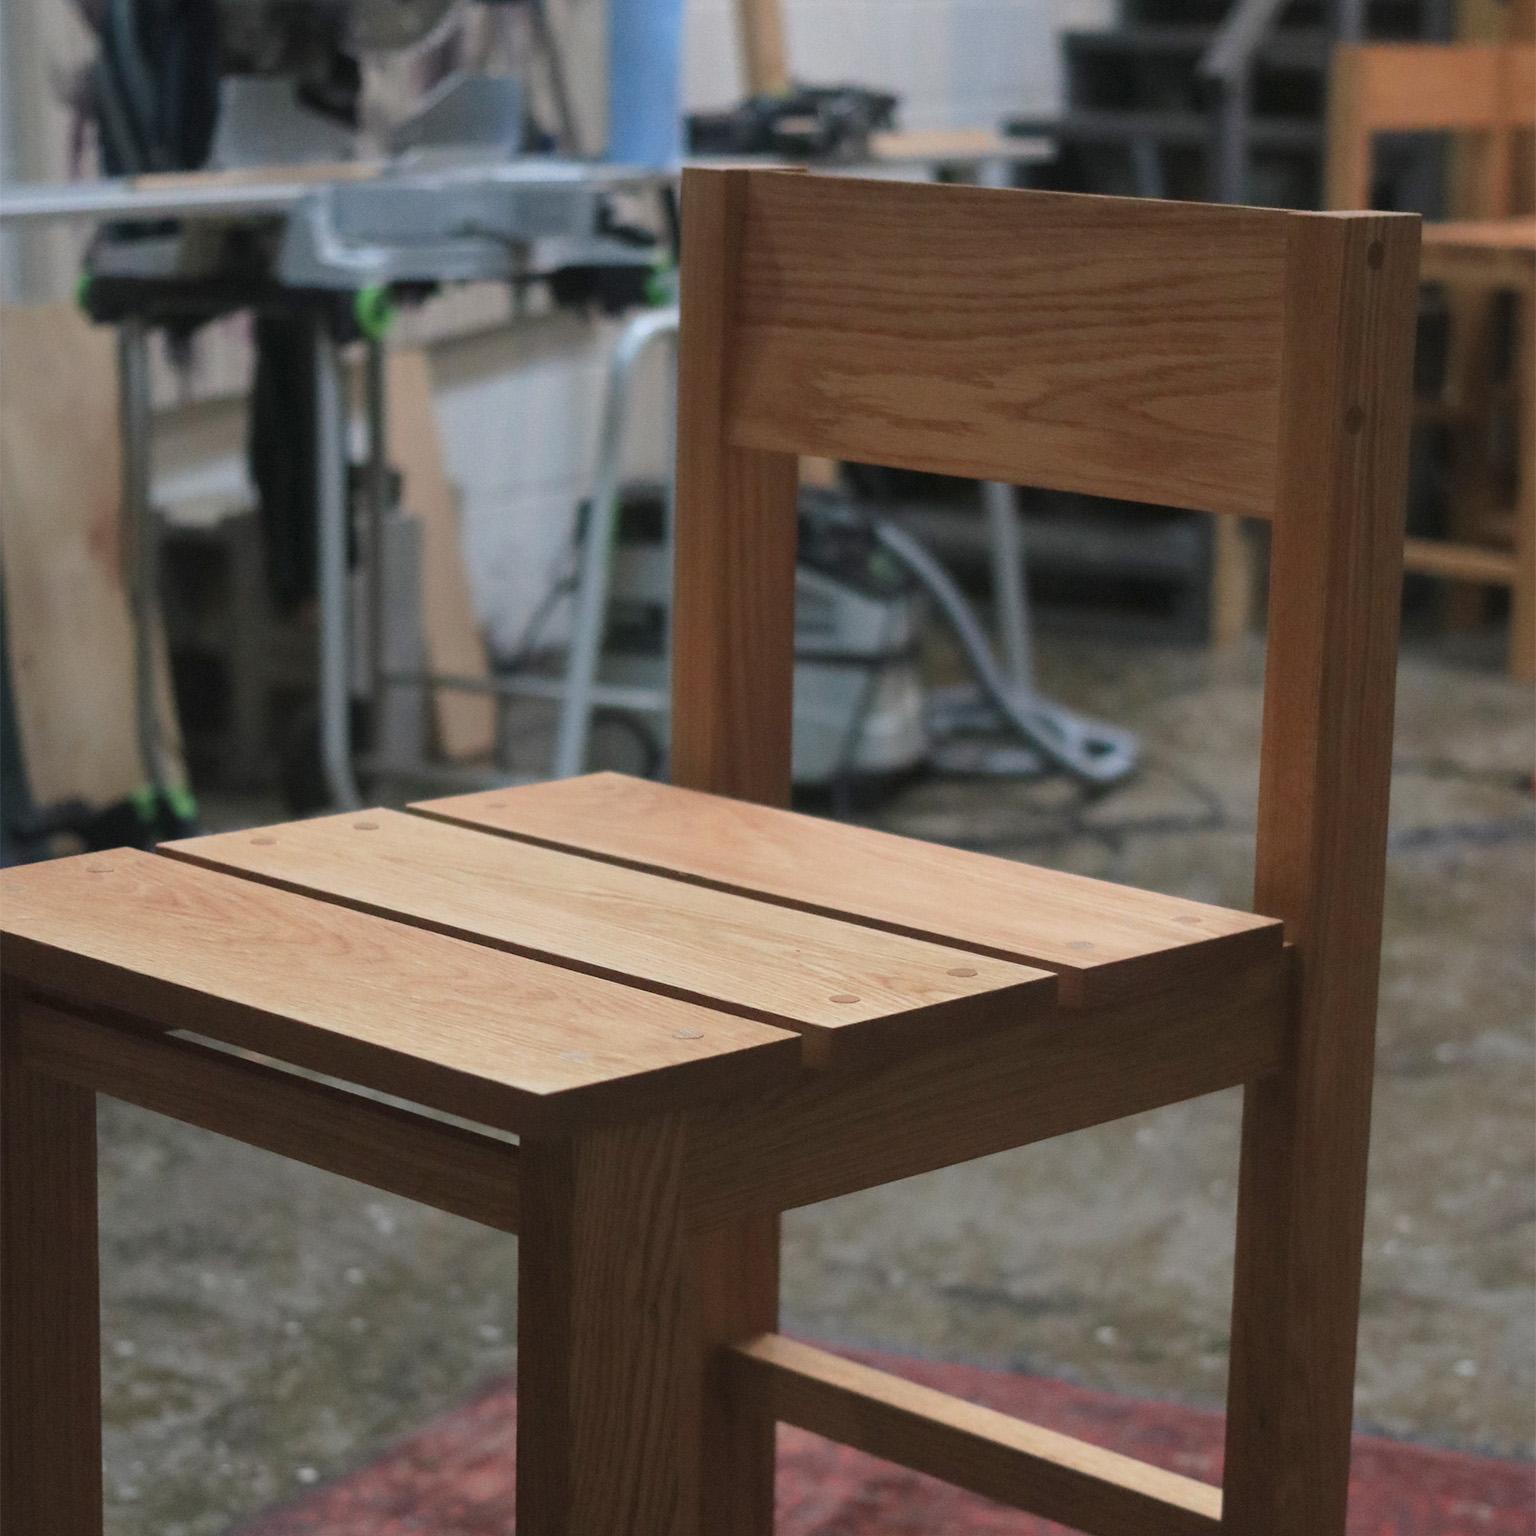 Der Andhrímnir Hocker aus massiver Eiche ist ein beeindruckendes, minimalistisches Möbelstück, das architektonischen Charme ausstrahlt. Jeder Hocker wird mit Präzision und Sorgfalt aus massivem Eichenholz gefertigt, das eine unübertroffene